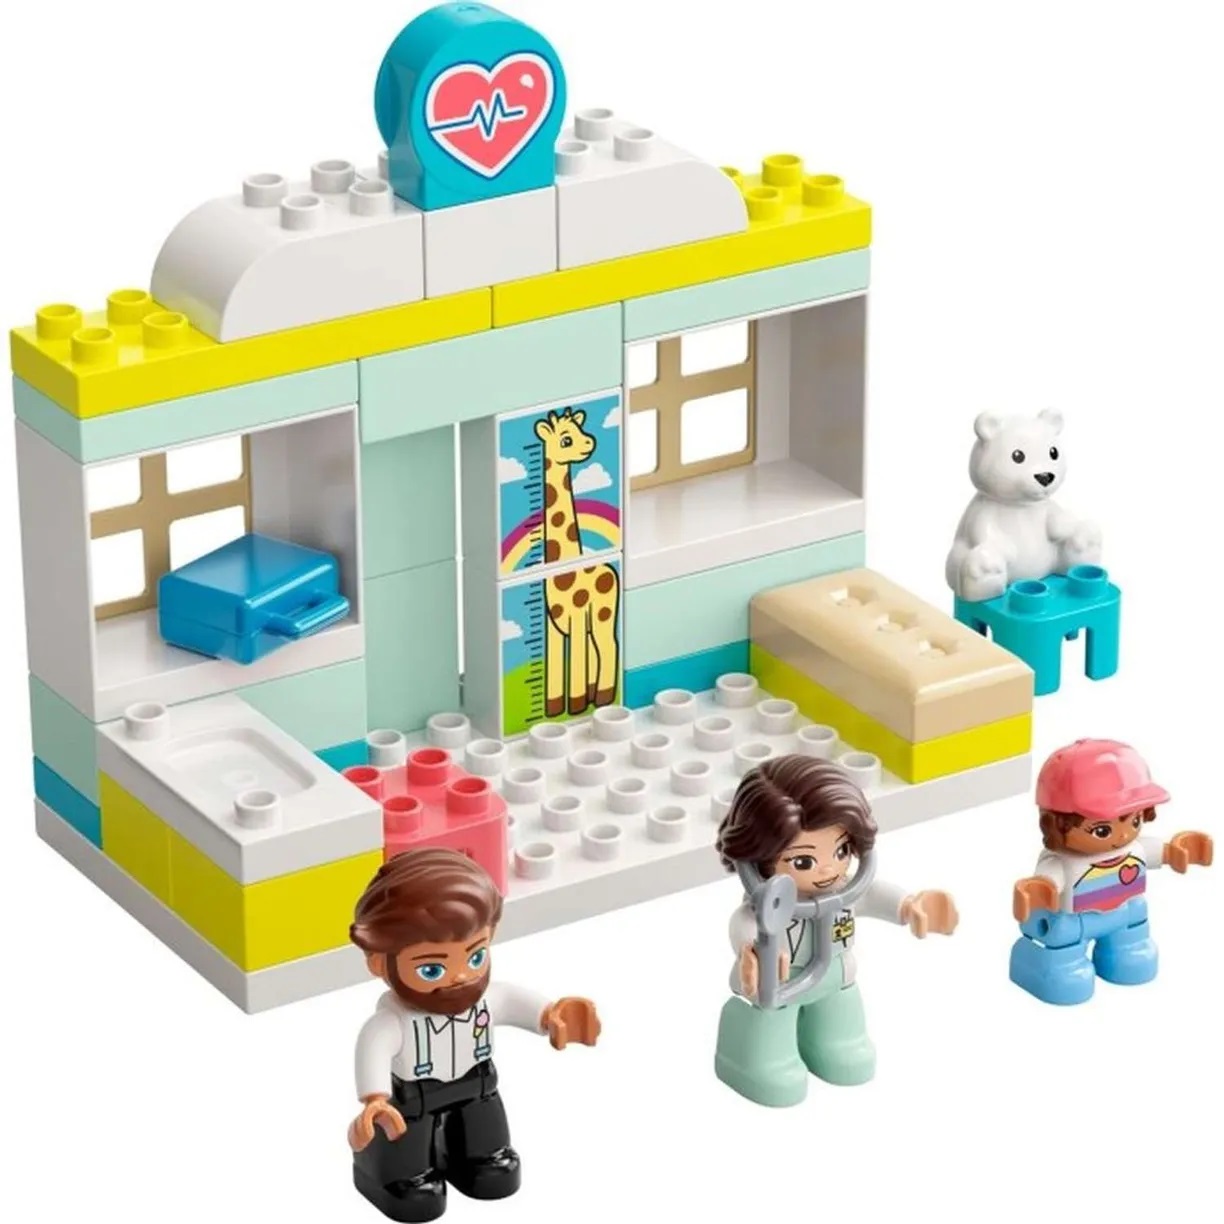 Lego Duplo 10968 Визит к врачу